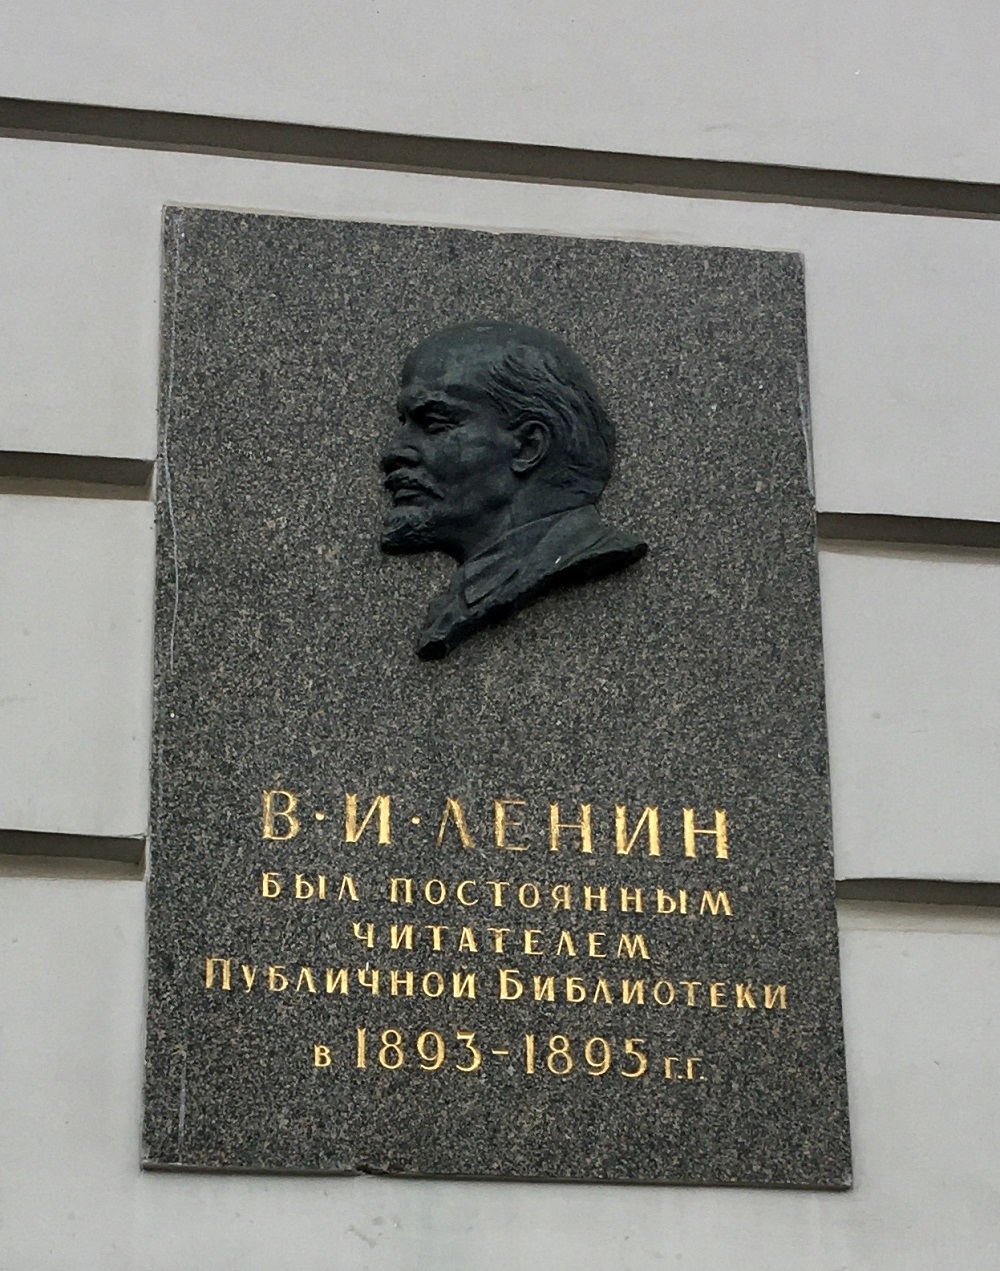 Saint Petersburg, Площадь Островского, 1-3 (корпус Соколова). Saint Petersburg — Memorial plaques